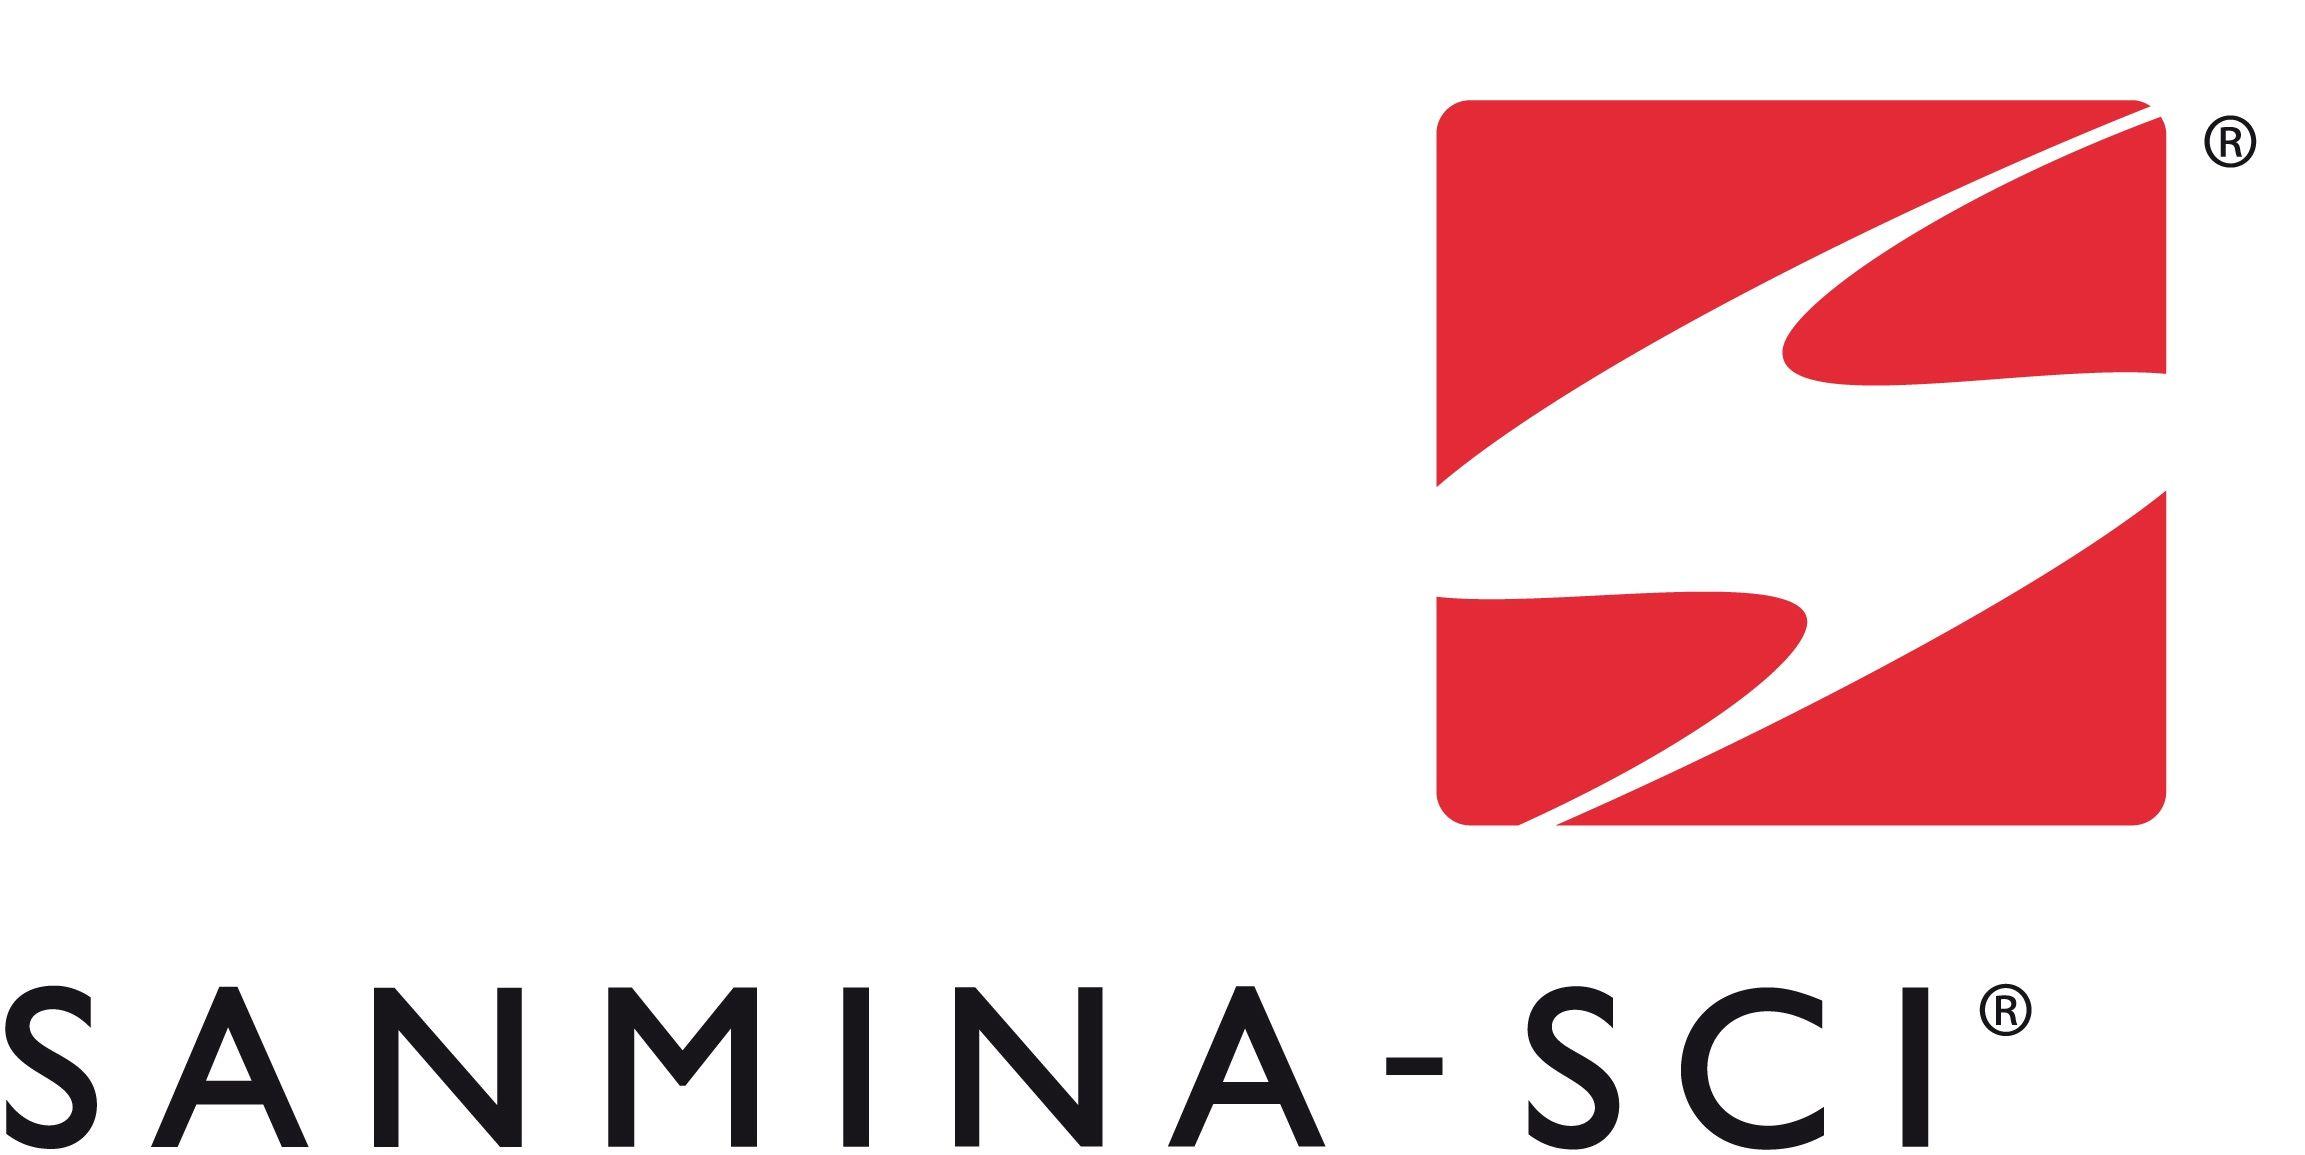 Sanmina Logo - Sanmina sci Logos